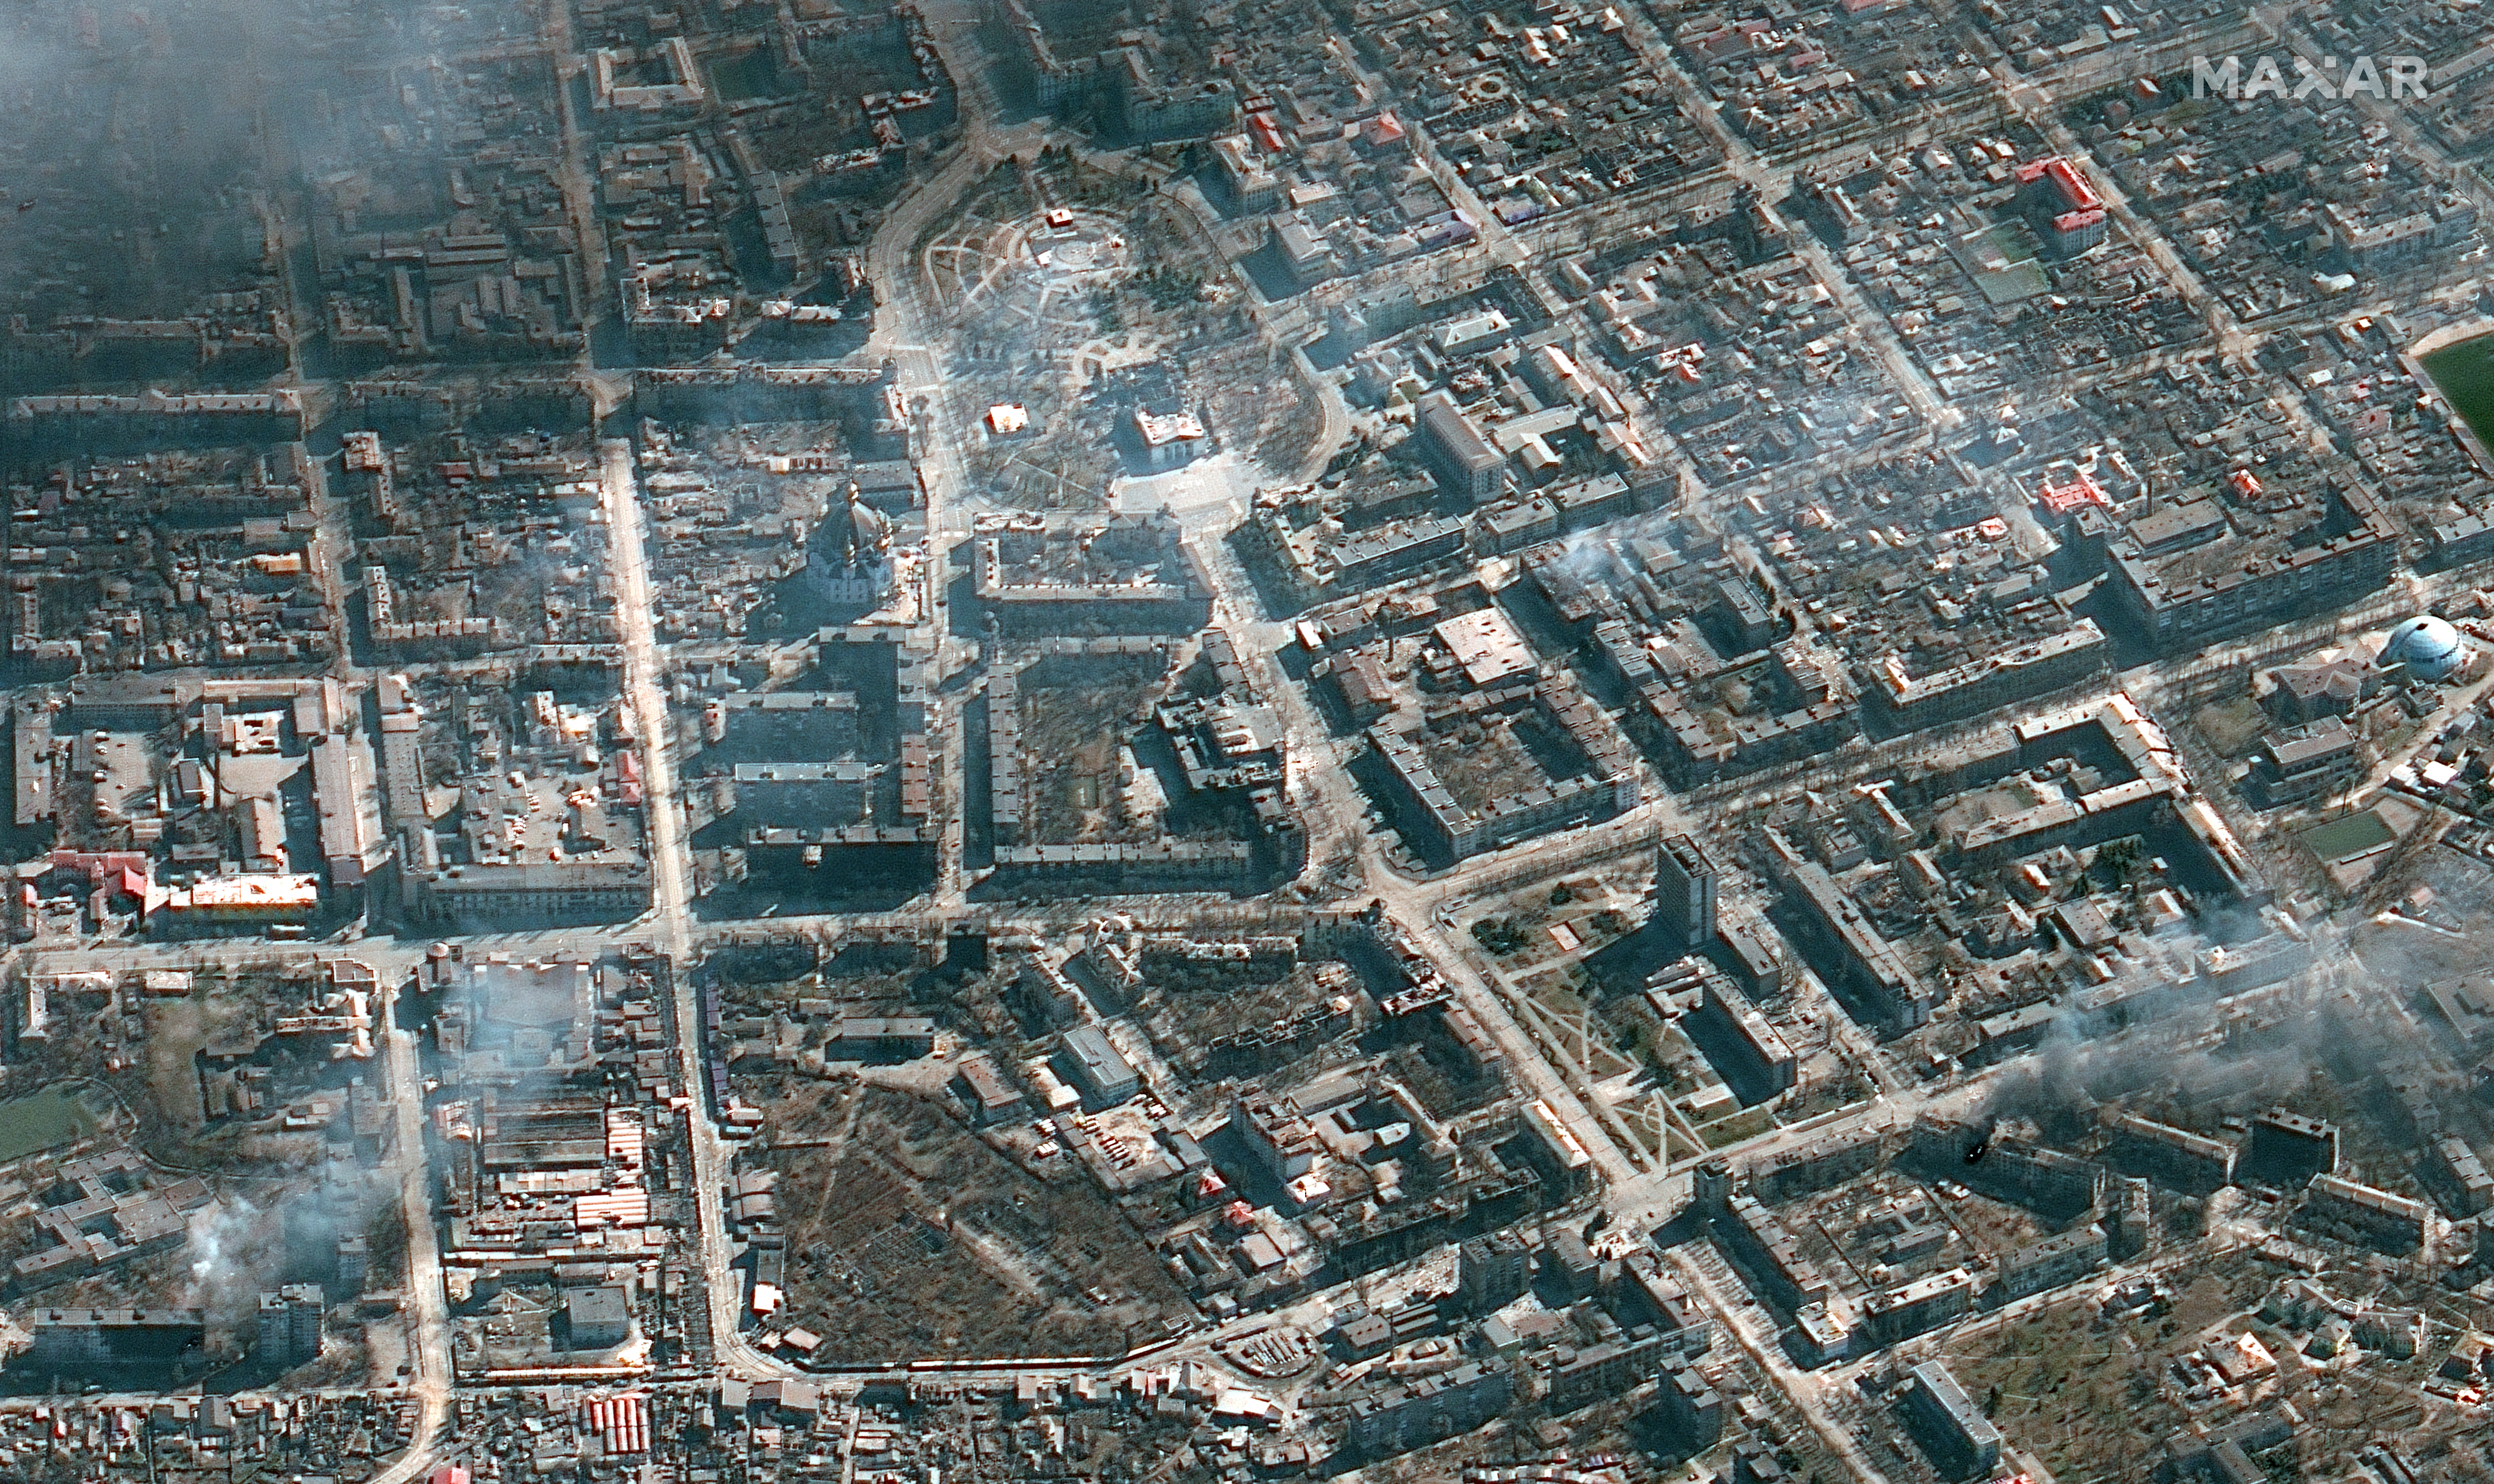 Az orosz hadsereg március 4. óta szakadatlanul bombázza a várost. A Maxar Technologies március 21-én nyilvánosságra hozott felvételén a felső sáv közepén a március 16-án lebombázott színház, körülötte a füstölgő város látható.